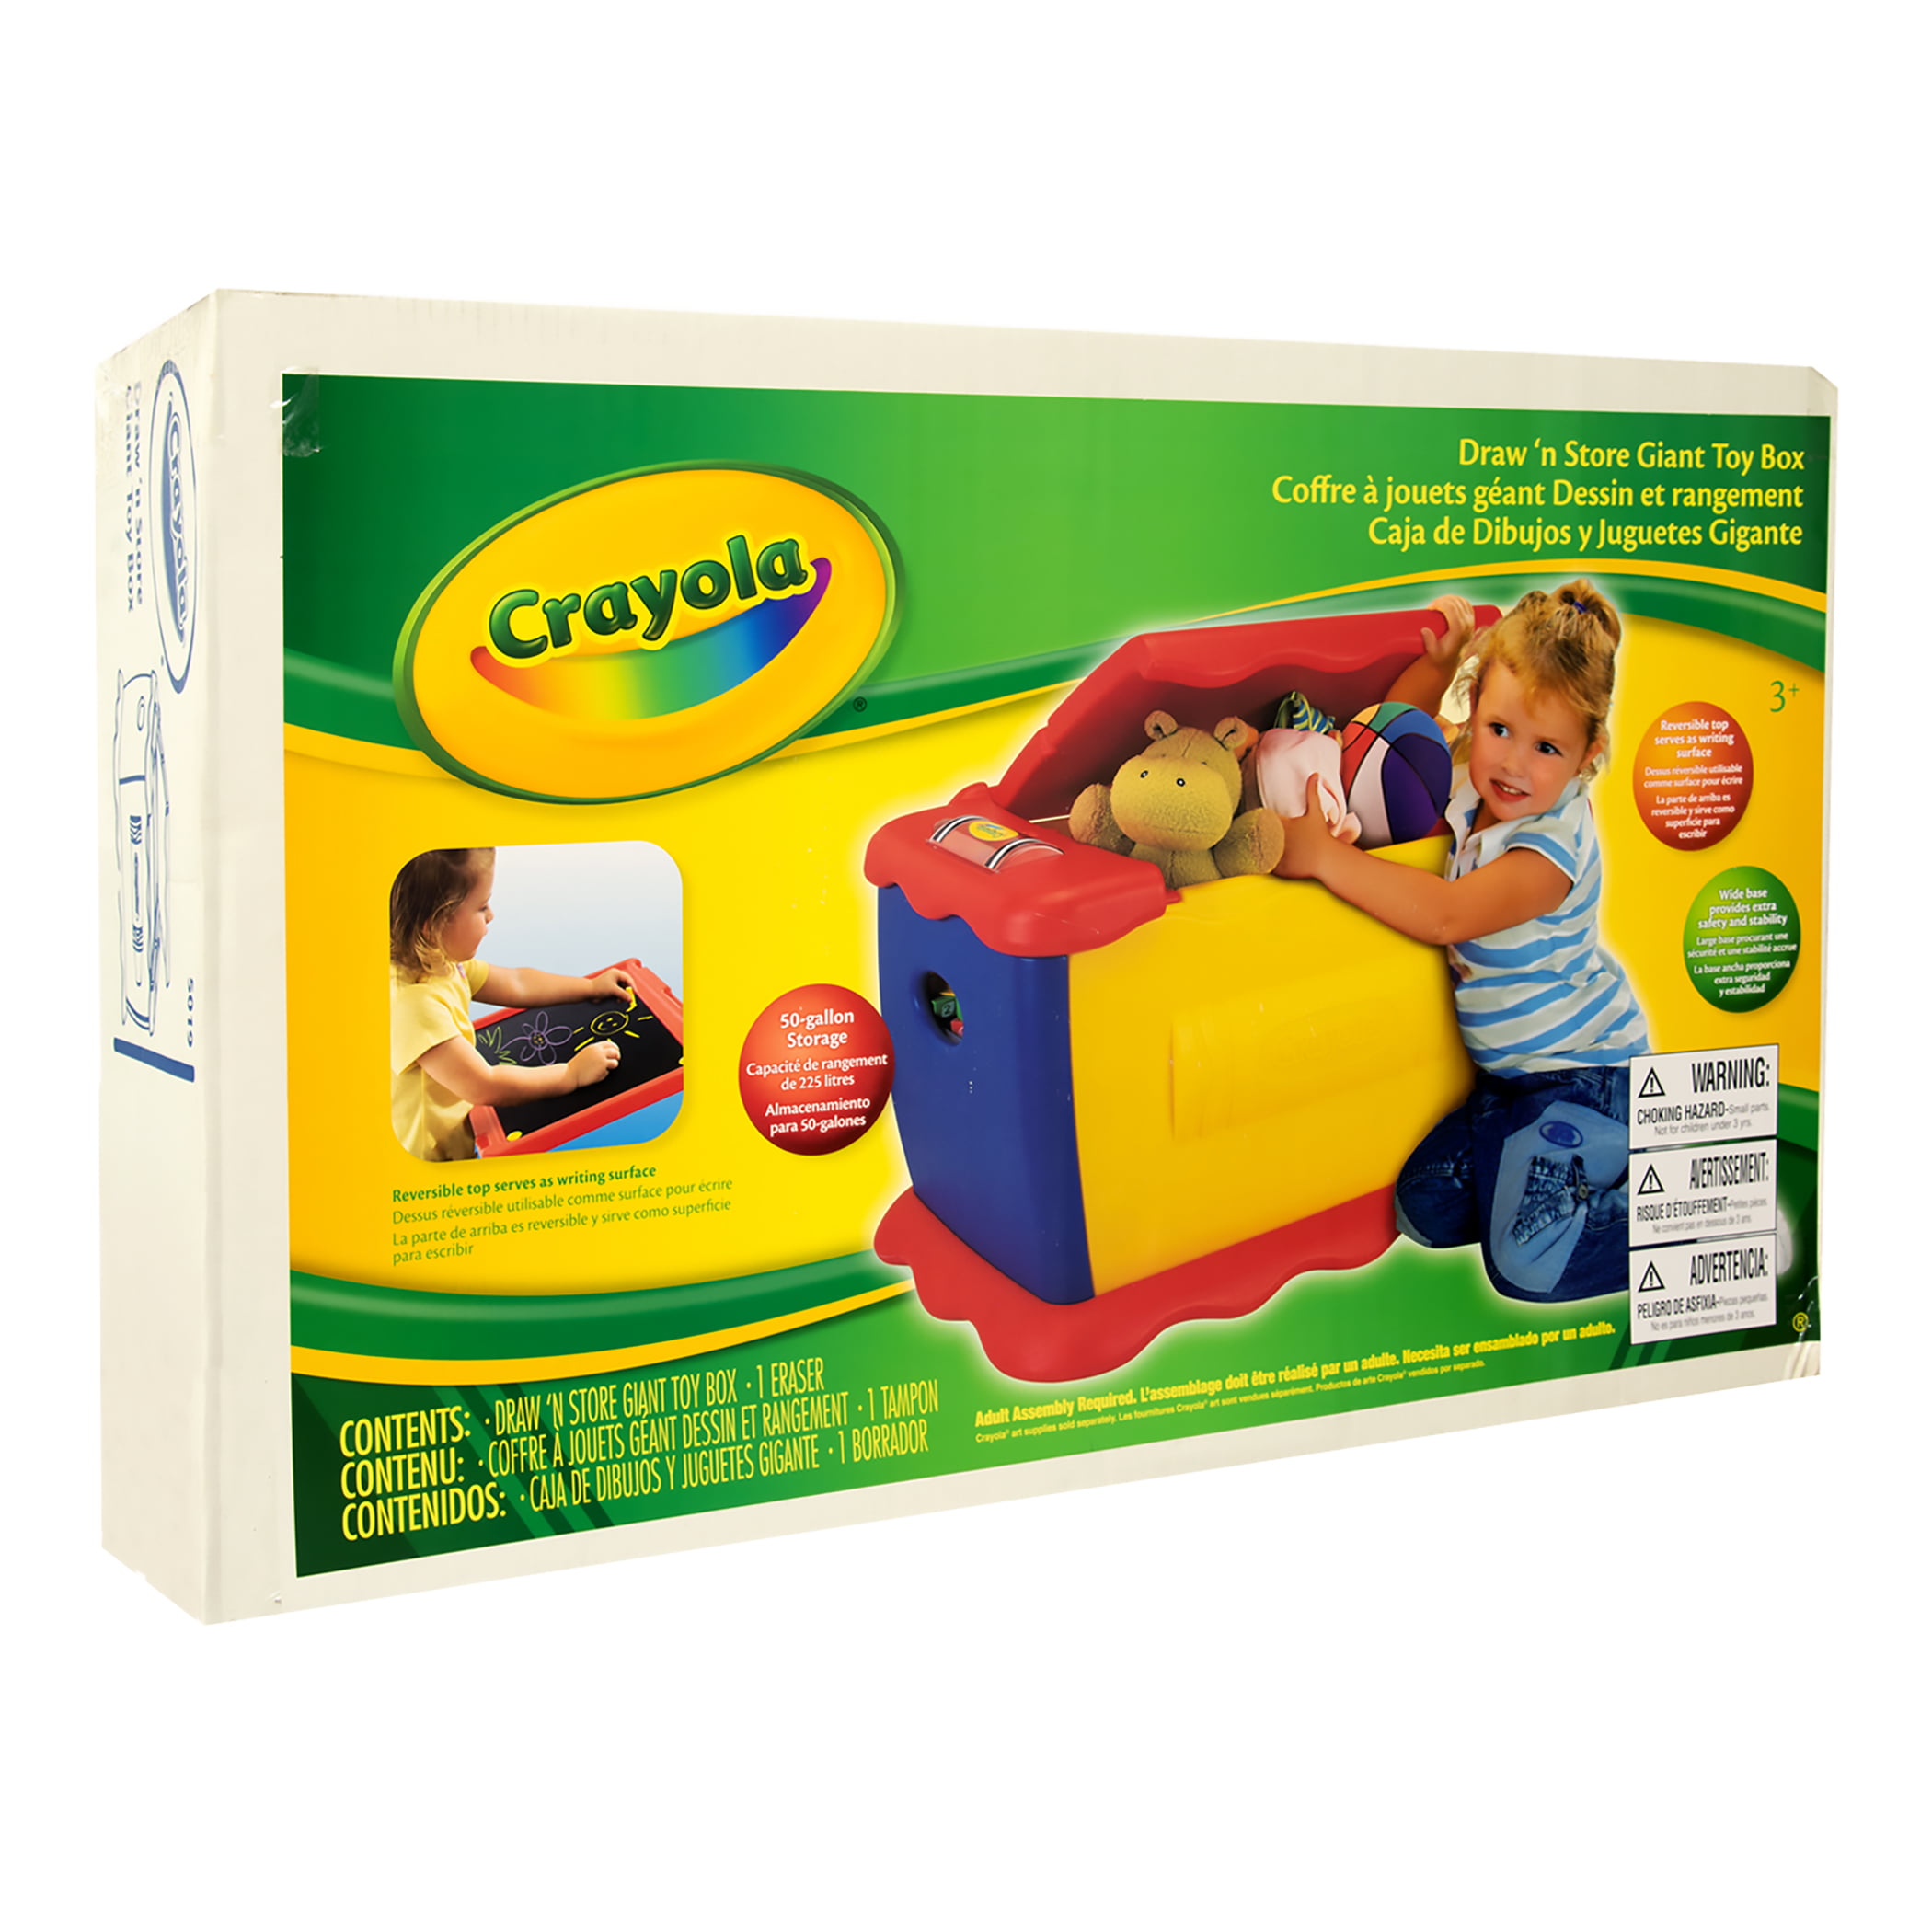 Giant toy. Crayola игрушки. Ящик для игрушек Crayola. Покажи мне игрушки Крайола. Игрушки Крайола купить на Озоне.